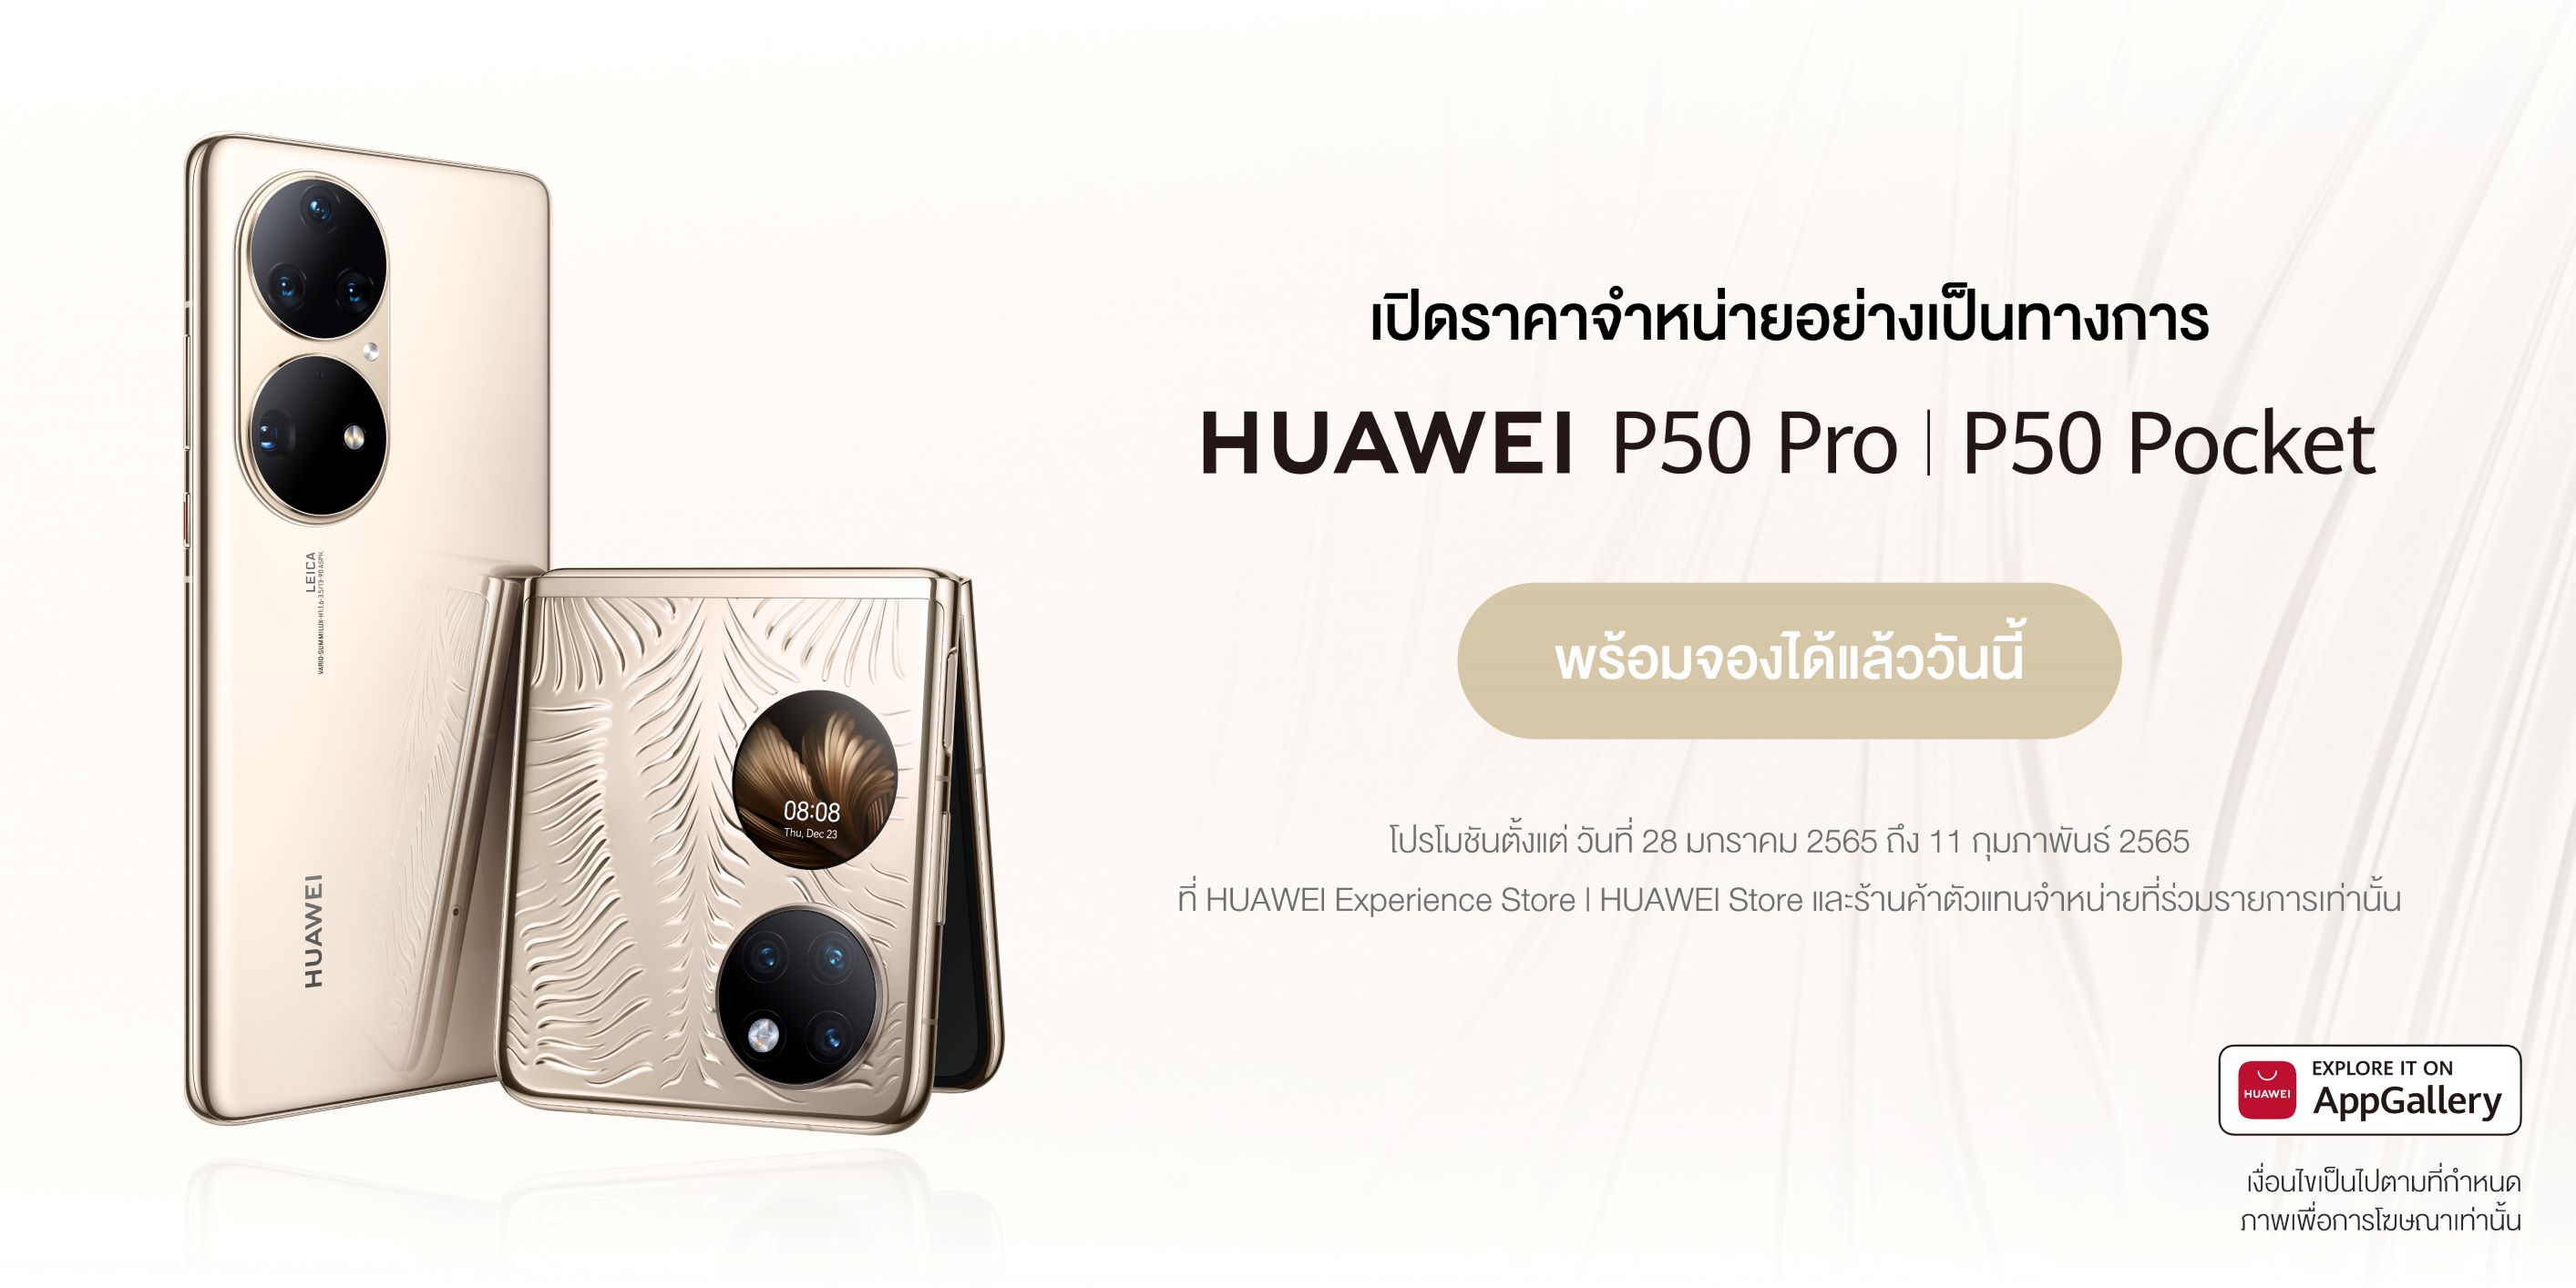 HUAWEI P50 Pro เปิดตัวในไทยด้วยราคา 33,990 บาท และ HUAWEI P50 Pocket ราคาเริ่มต้นที่ 46,990 บาท เปิดจองพร้อมโปรโมชันสุดคุ้มตั้งแต่วันที่ 28 มกราคม 2565 ถึง 11 กุมภาพันธ์ 2565